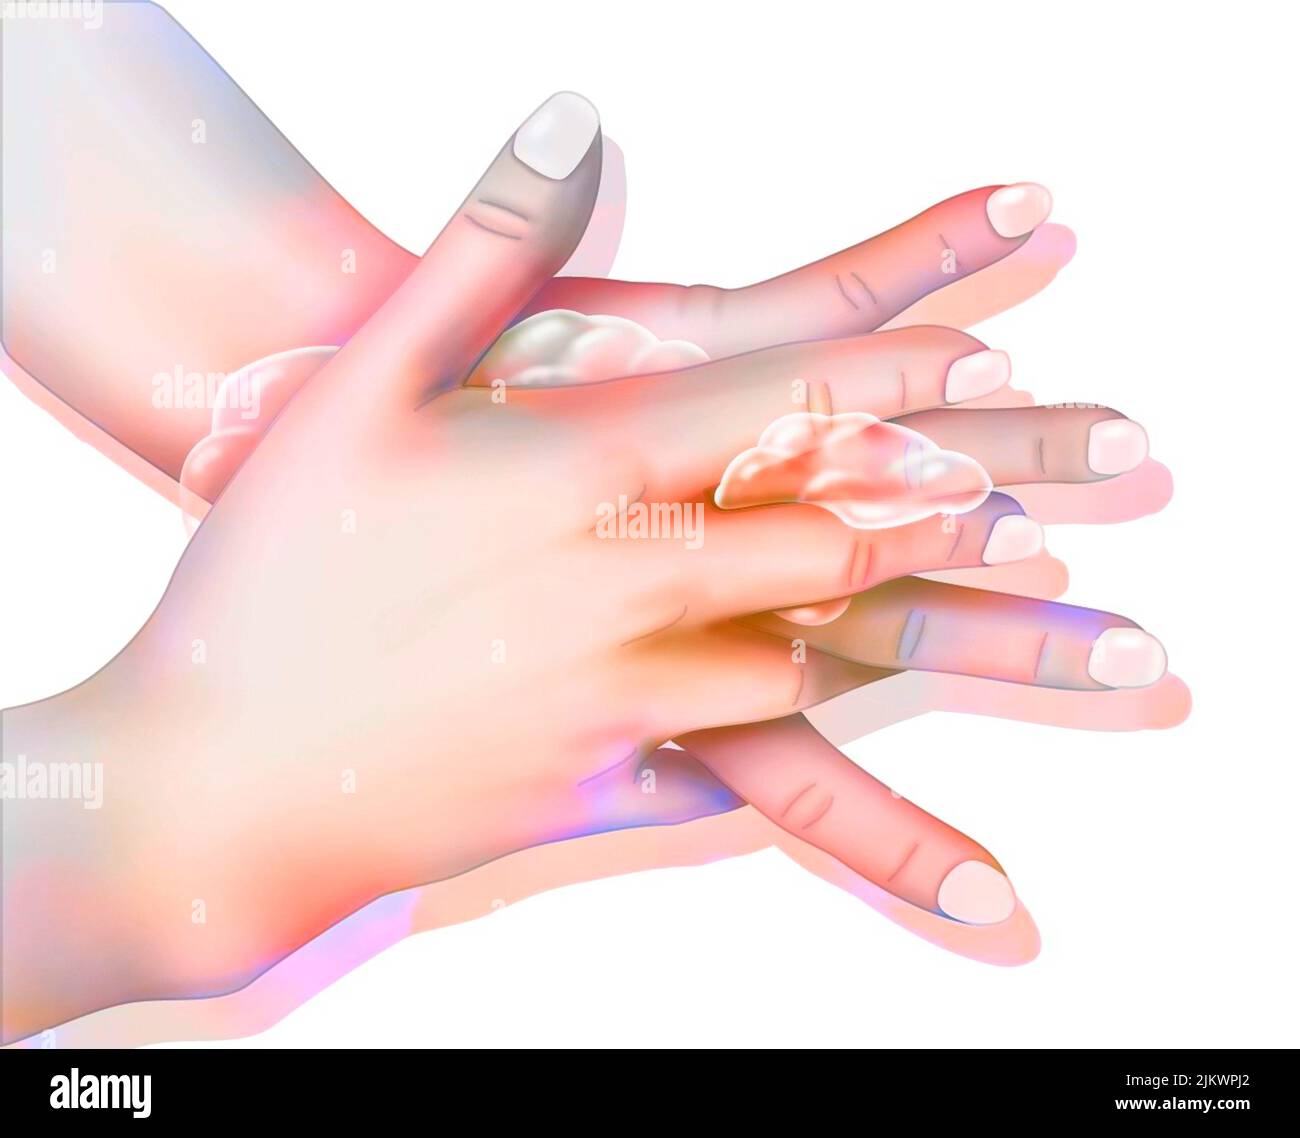 Igiene: Lavaggio delle mani mediante sfregamento tra le dita. Foto Stock